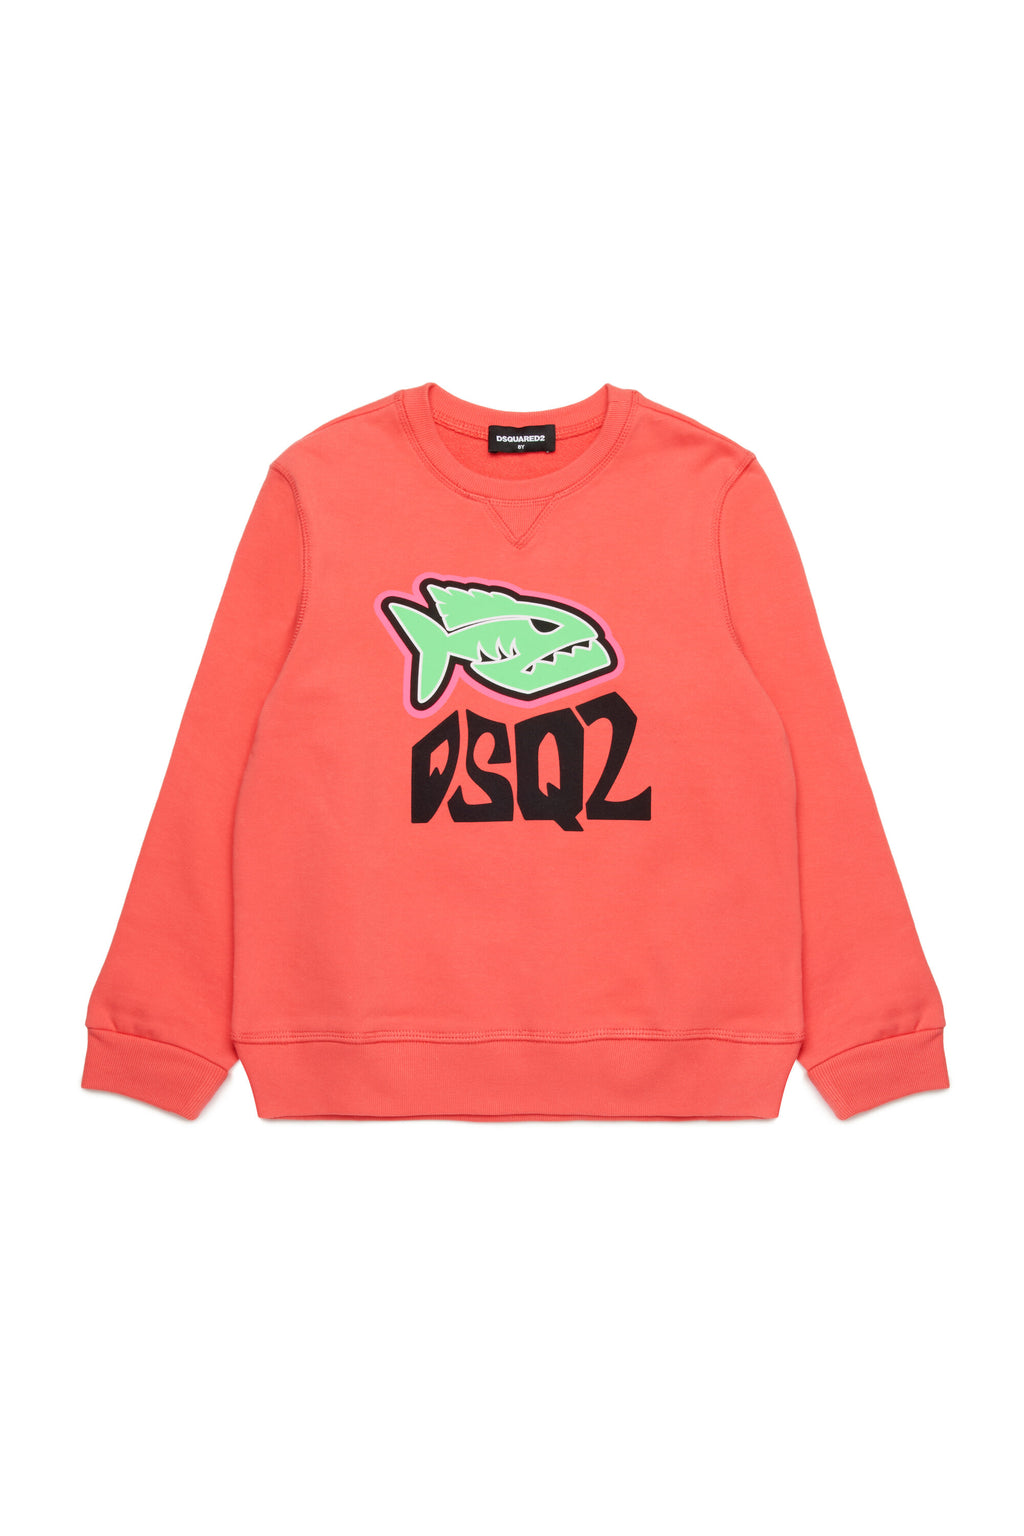 Piranha graphic sweatshirt